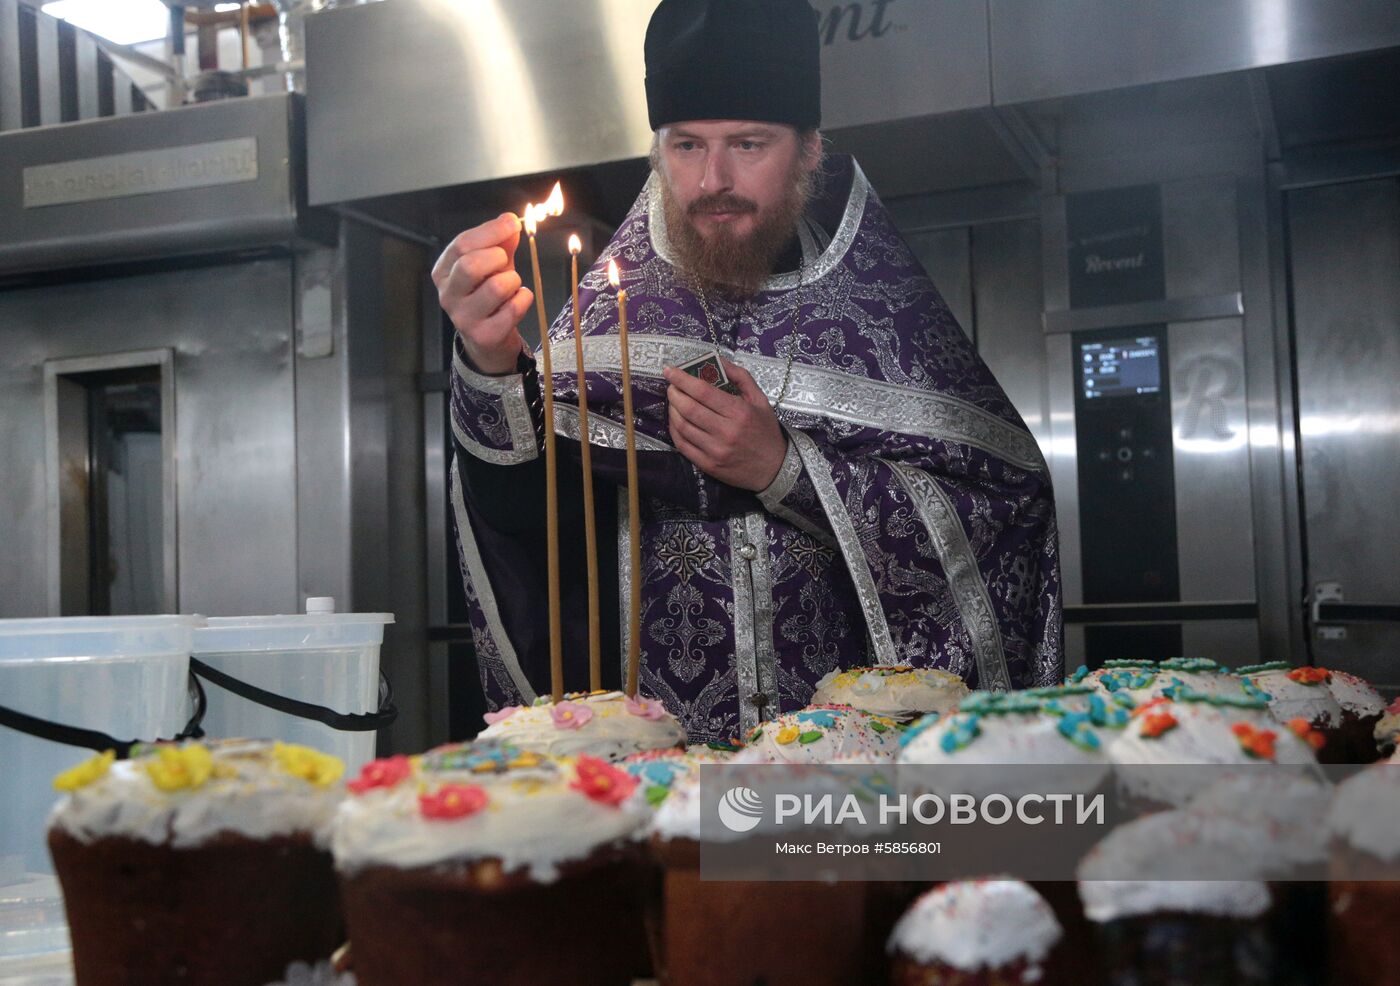 Освящение пасхальной продукции на заводе "Крымхлеб"